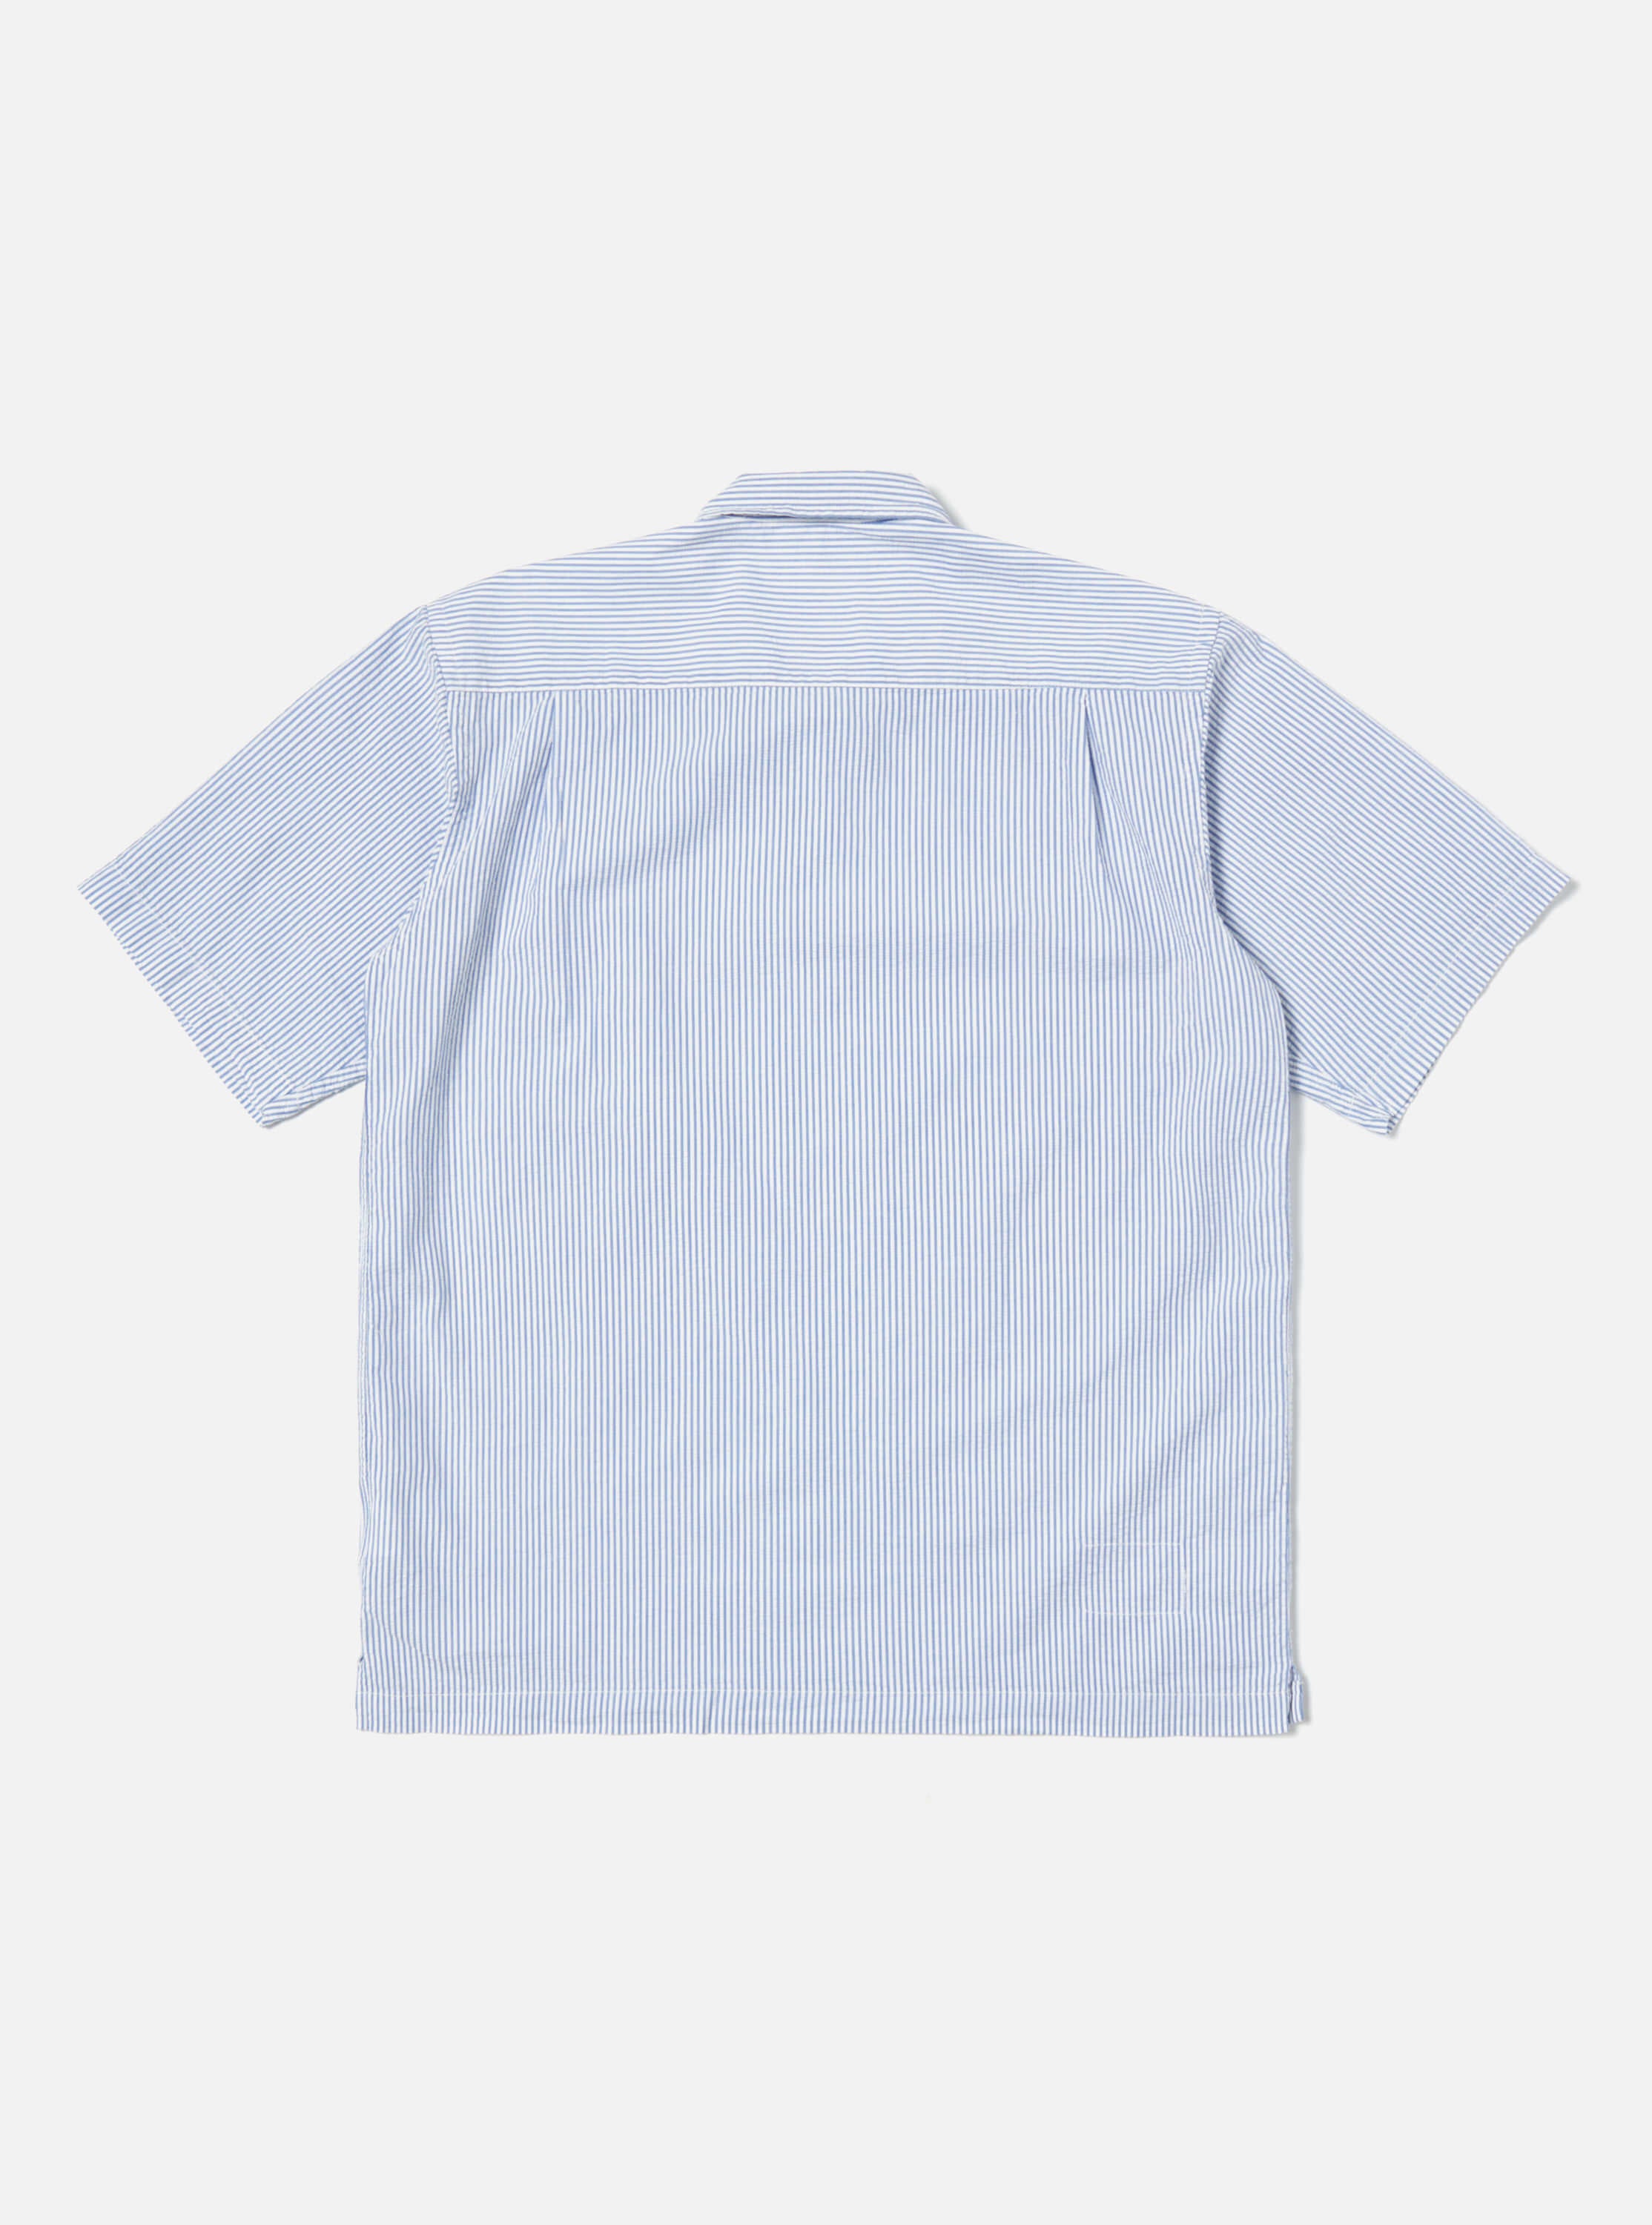 Universal Works Pullover Shirt in Blue Stripe Seersucker